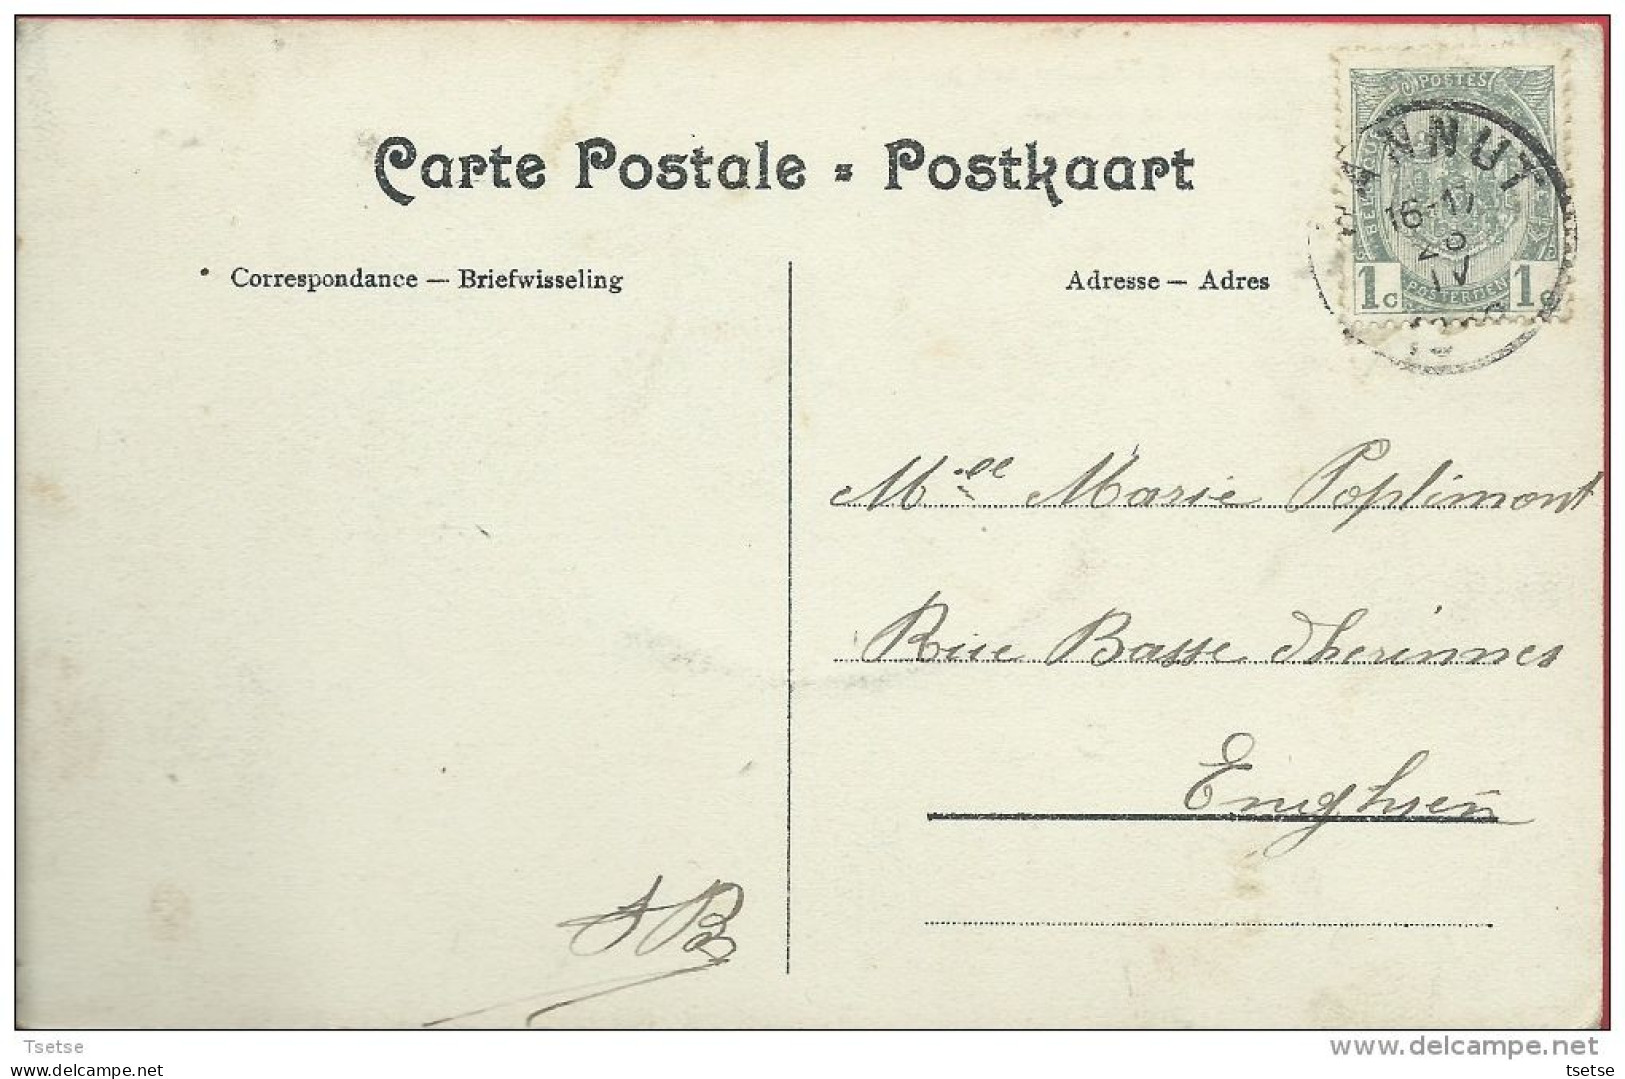 Hannut - Top Carte - Marché Aux Porcs ... Rue De La Station - 1908 ( Voir Verso ) - Hannut